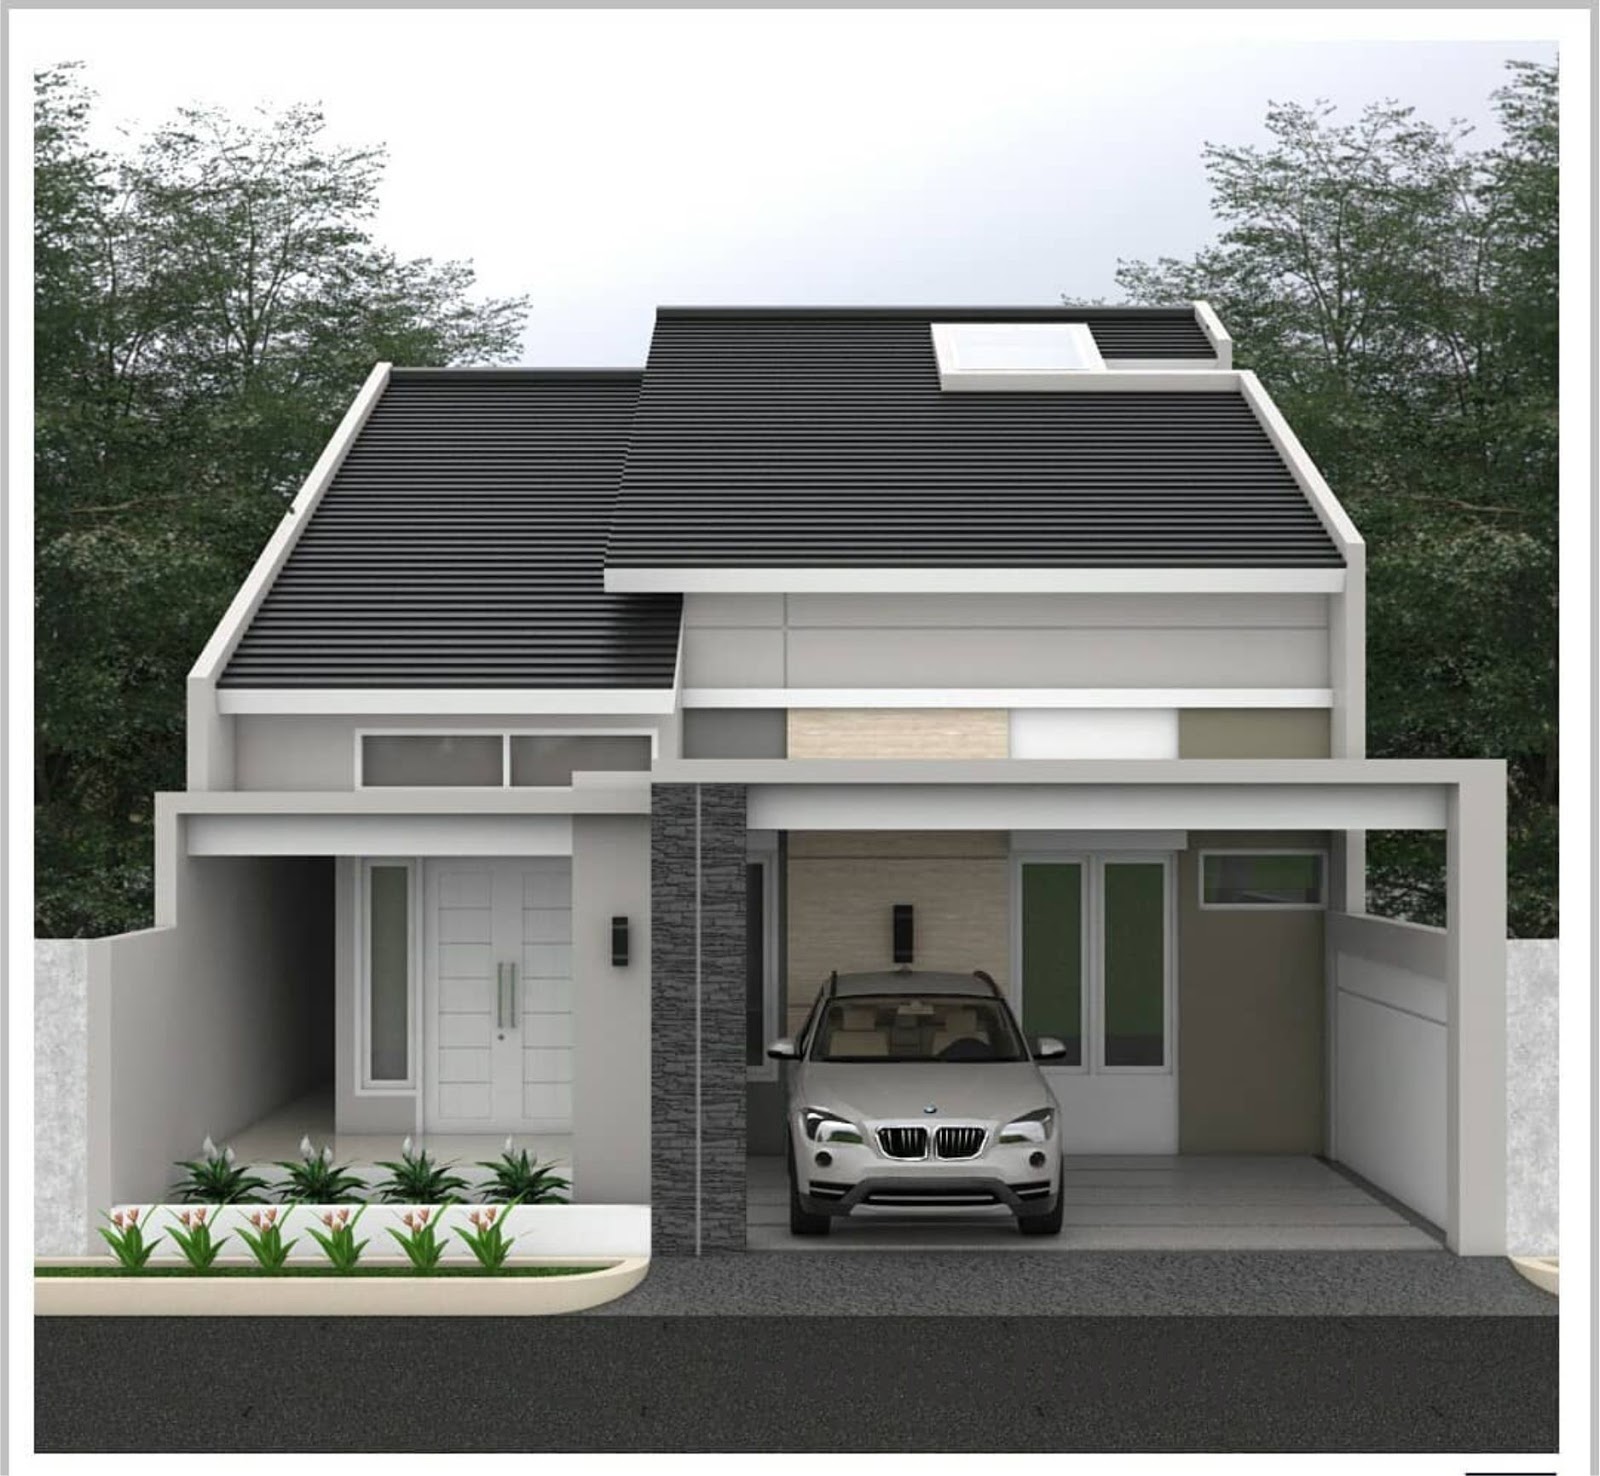 Desain Dan Denah Rumah Ukuran 9 X 18 M Dengan Ventilasi Atap Kaca Dan Taman Minimalis Di Dalam Rumah Yang Terkesan Asri Homeshabbycom Design Home Plans